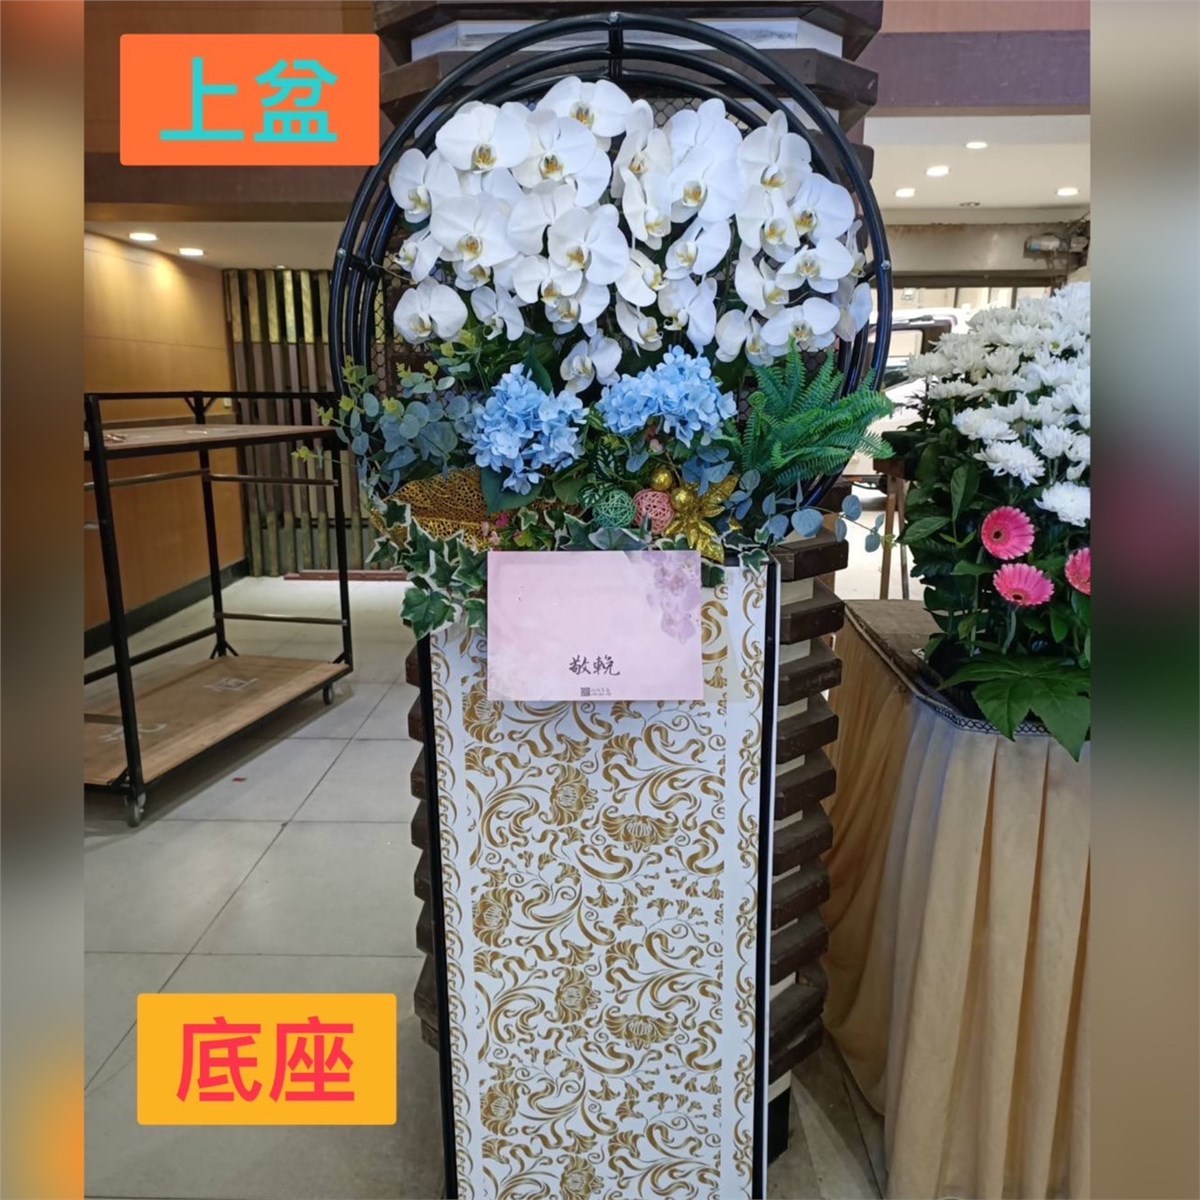 日式圓框蘭花 (白色或粉色蘭花買斷/限館外/圓框底座需回收)